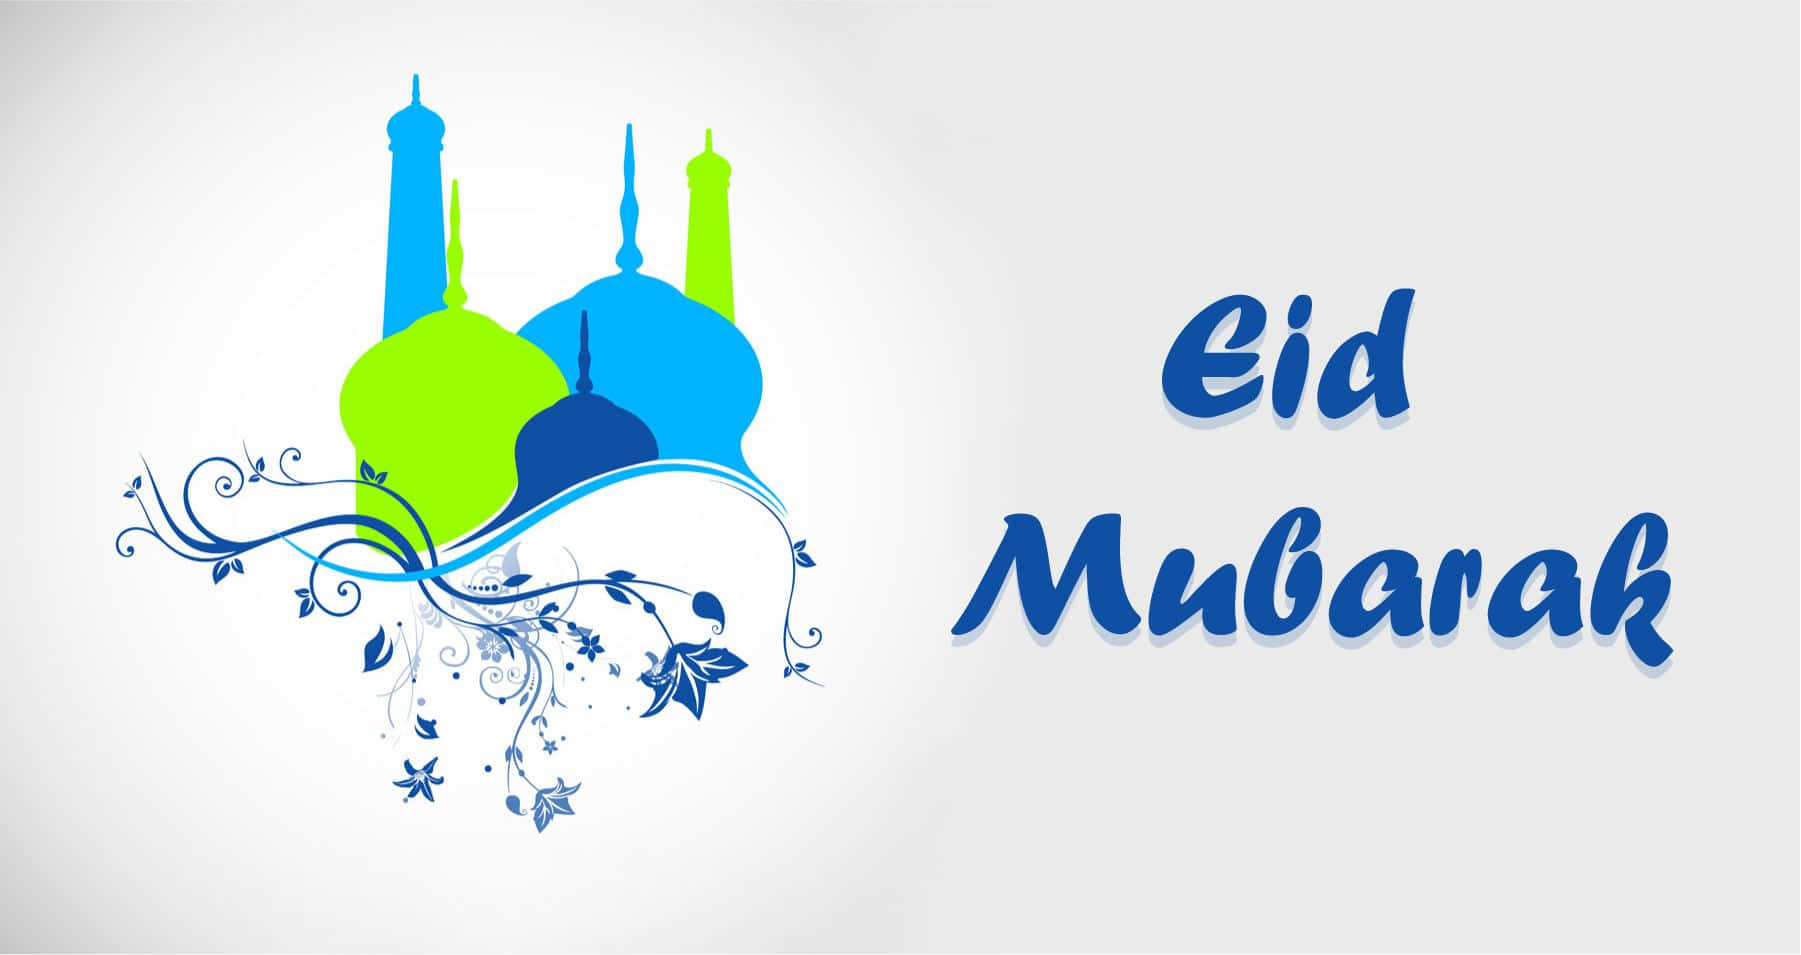 Ønskerdig En Eid Mubarak Fyldt Med Glæde, Kærlighed Og Velsignelser!